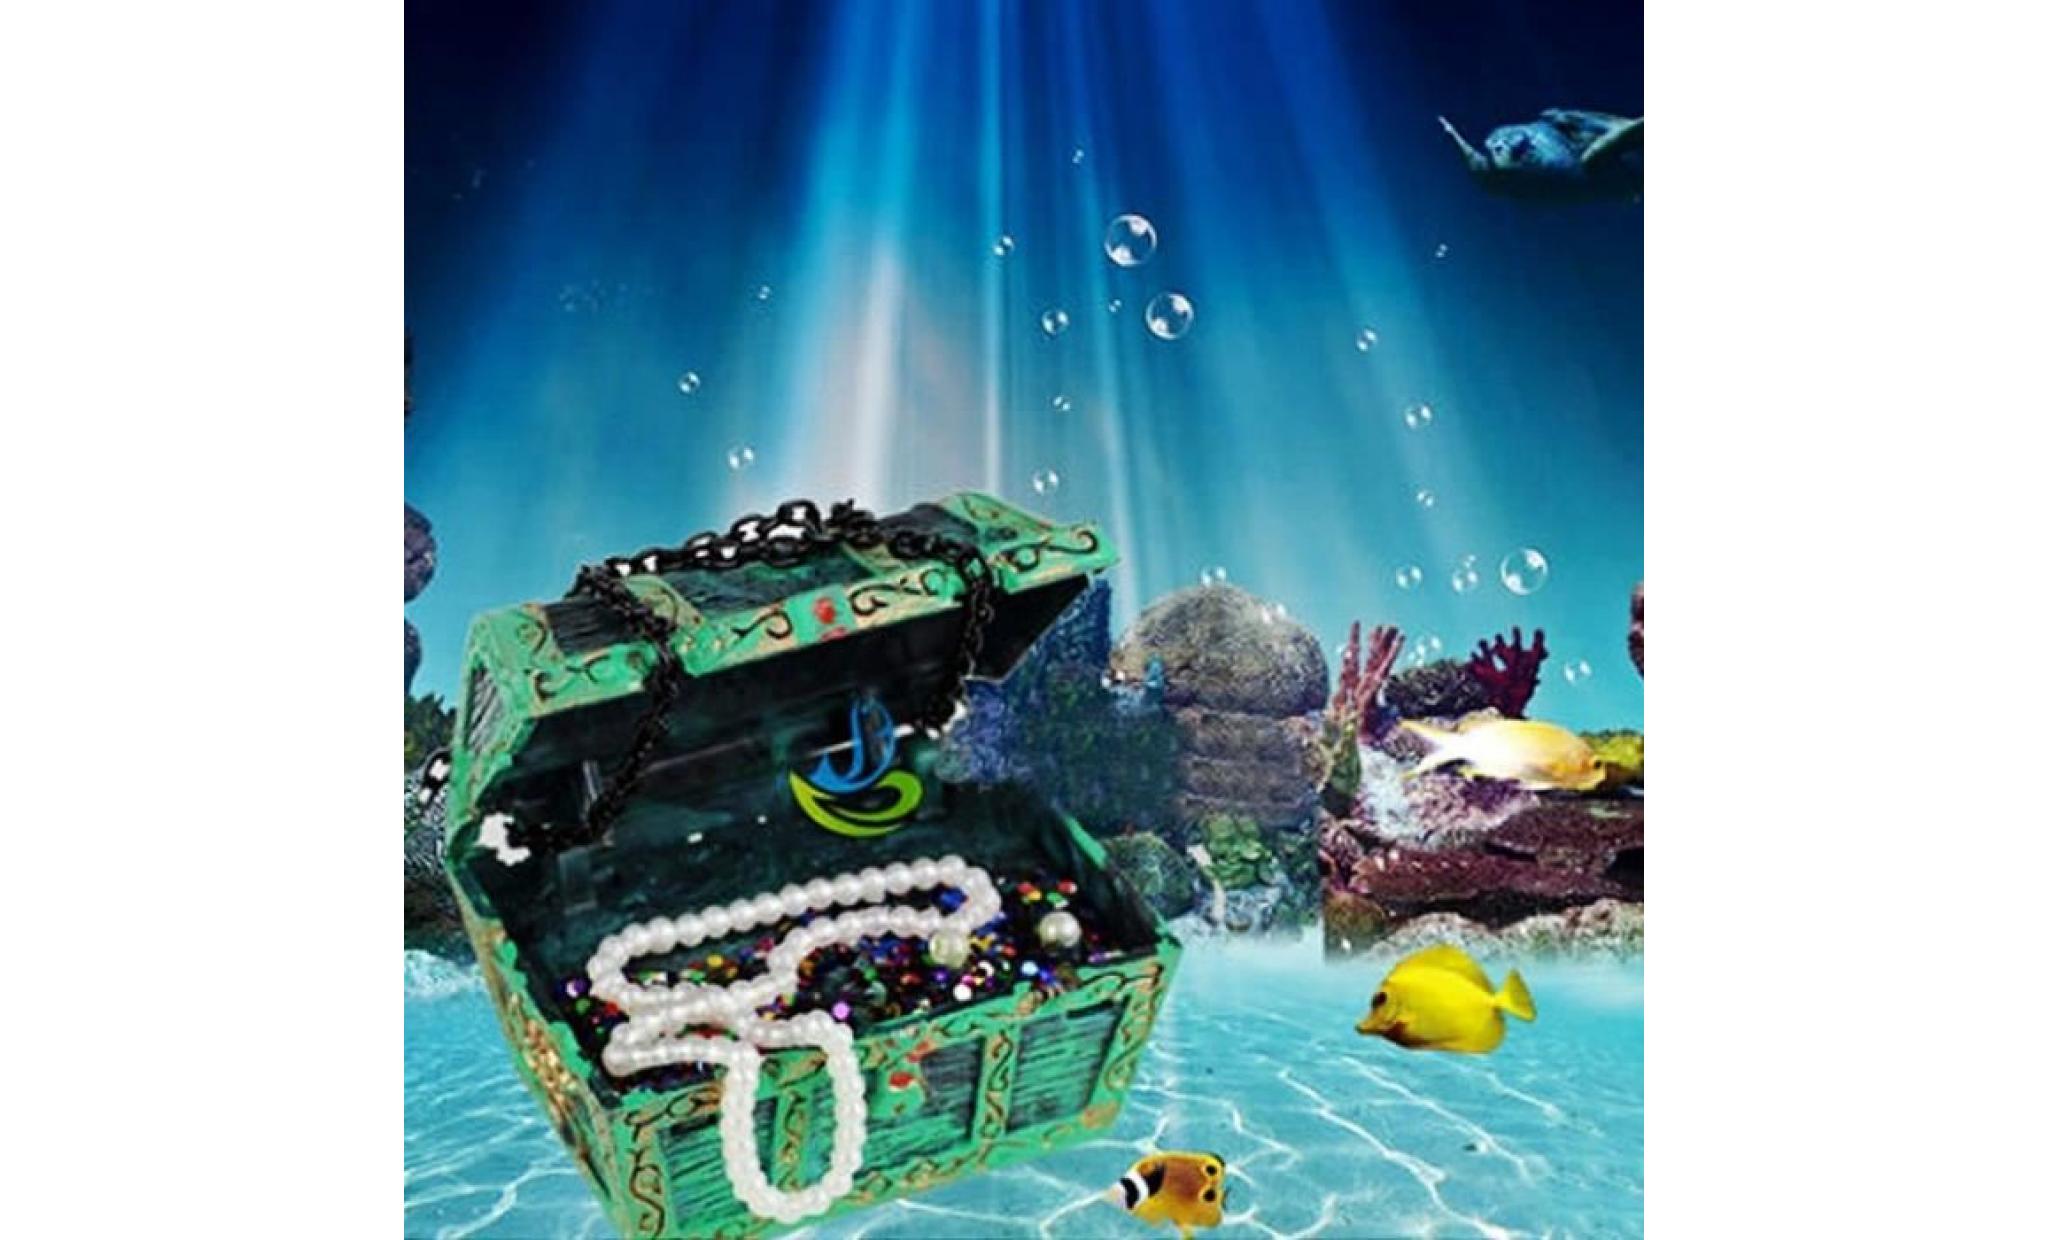 nouveau trésor poitrine en forme d'aquarium action air ornement fish tank ornement aquarium décor paysage pas cher